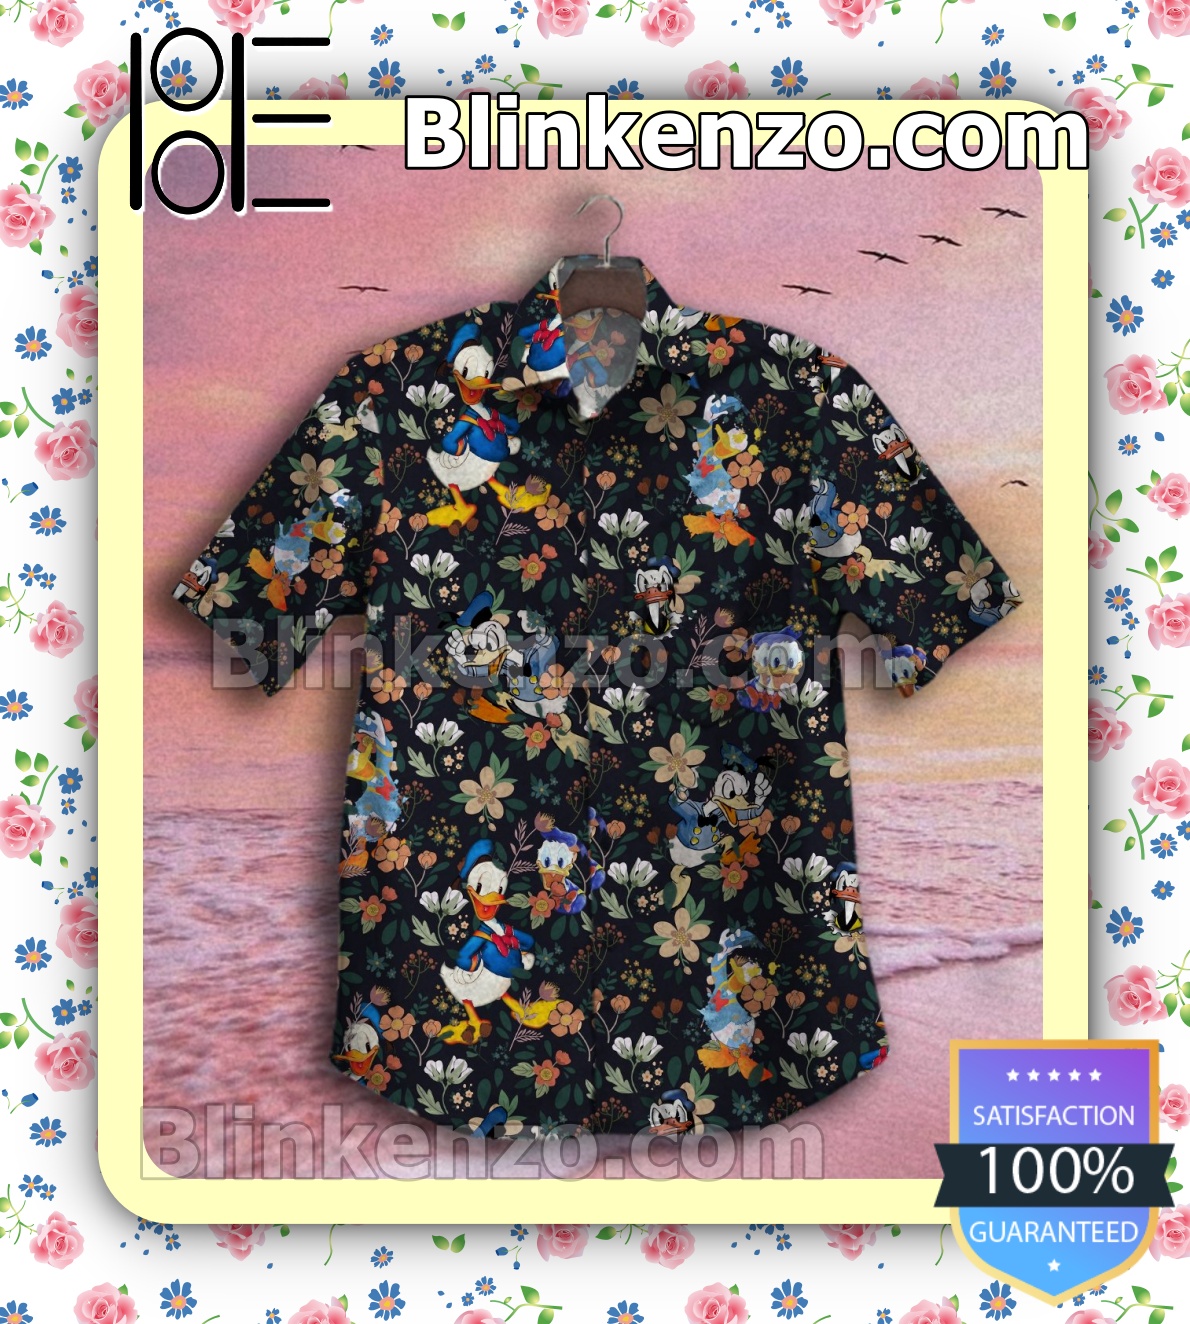 Limited Edition Donald Duck Flower Garden Summer Shirts